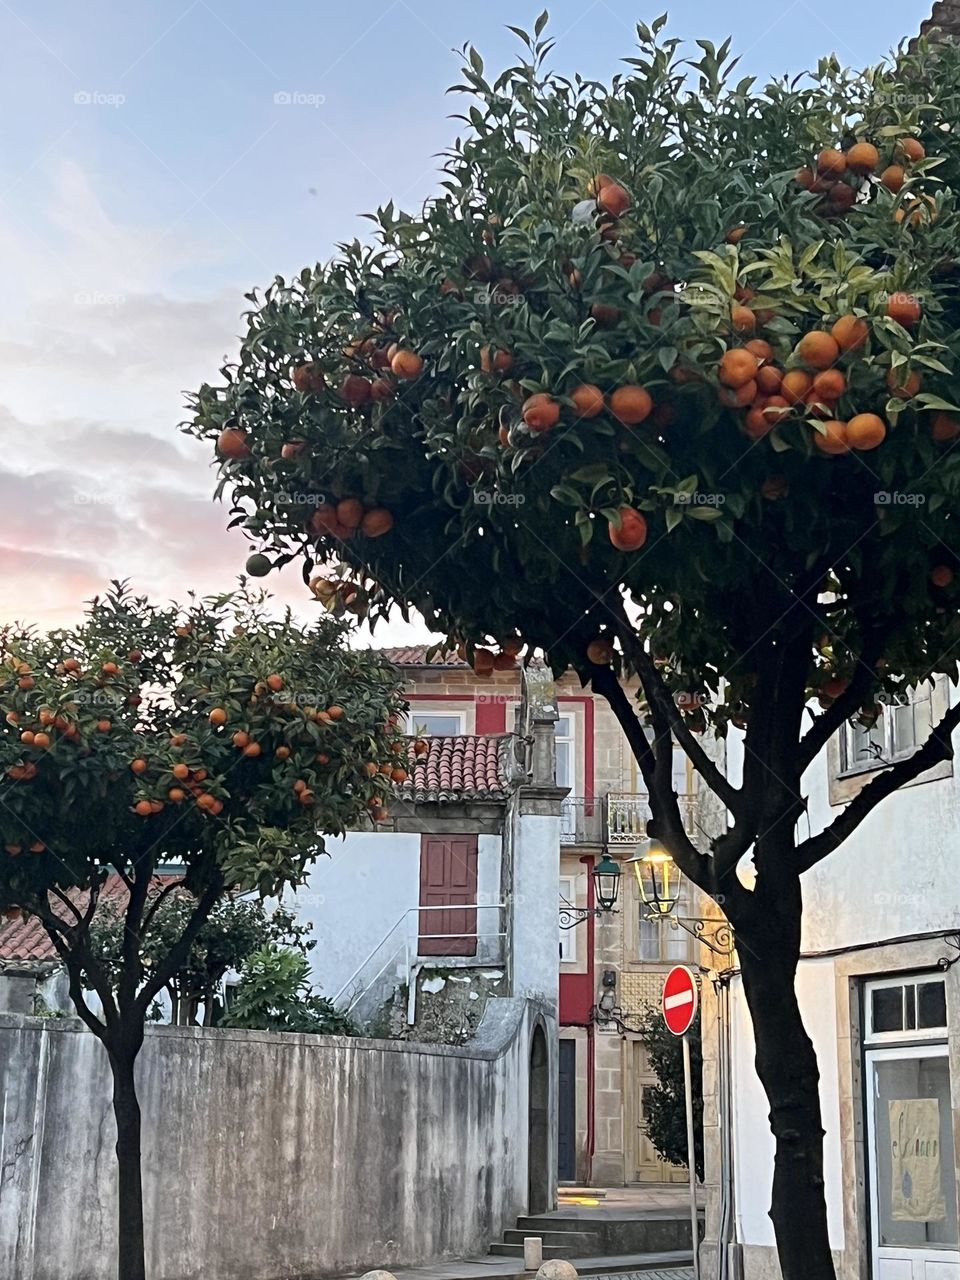 Orange trees in Portugal 